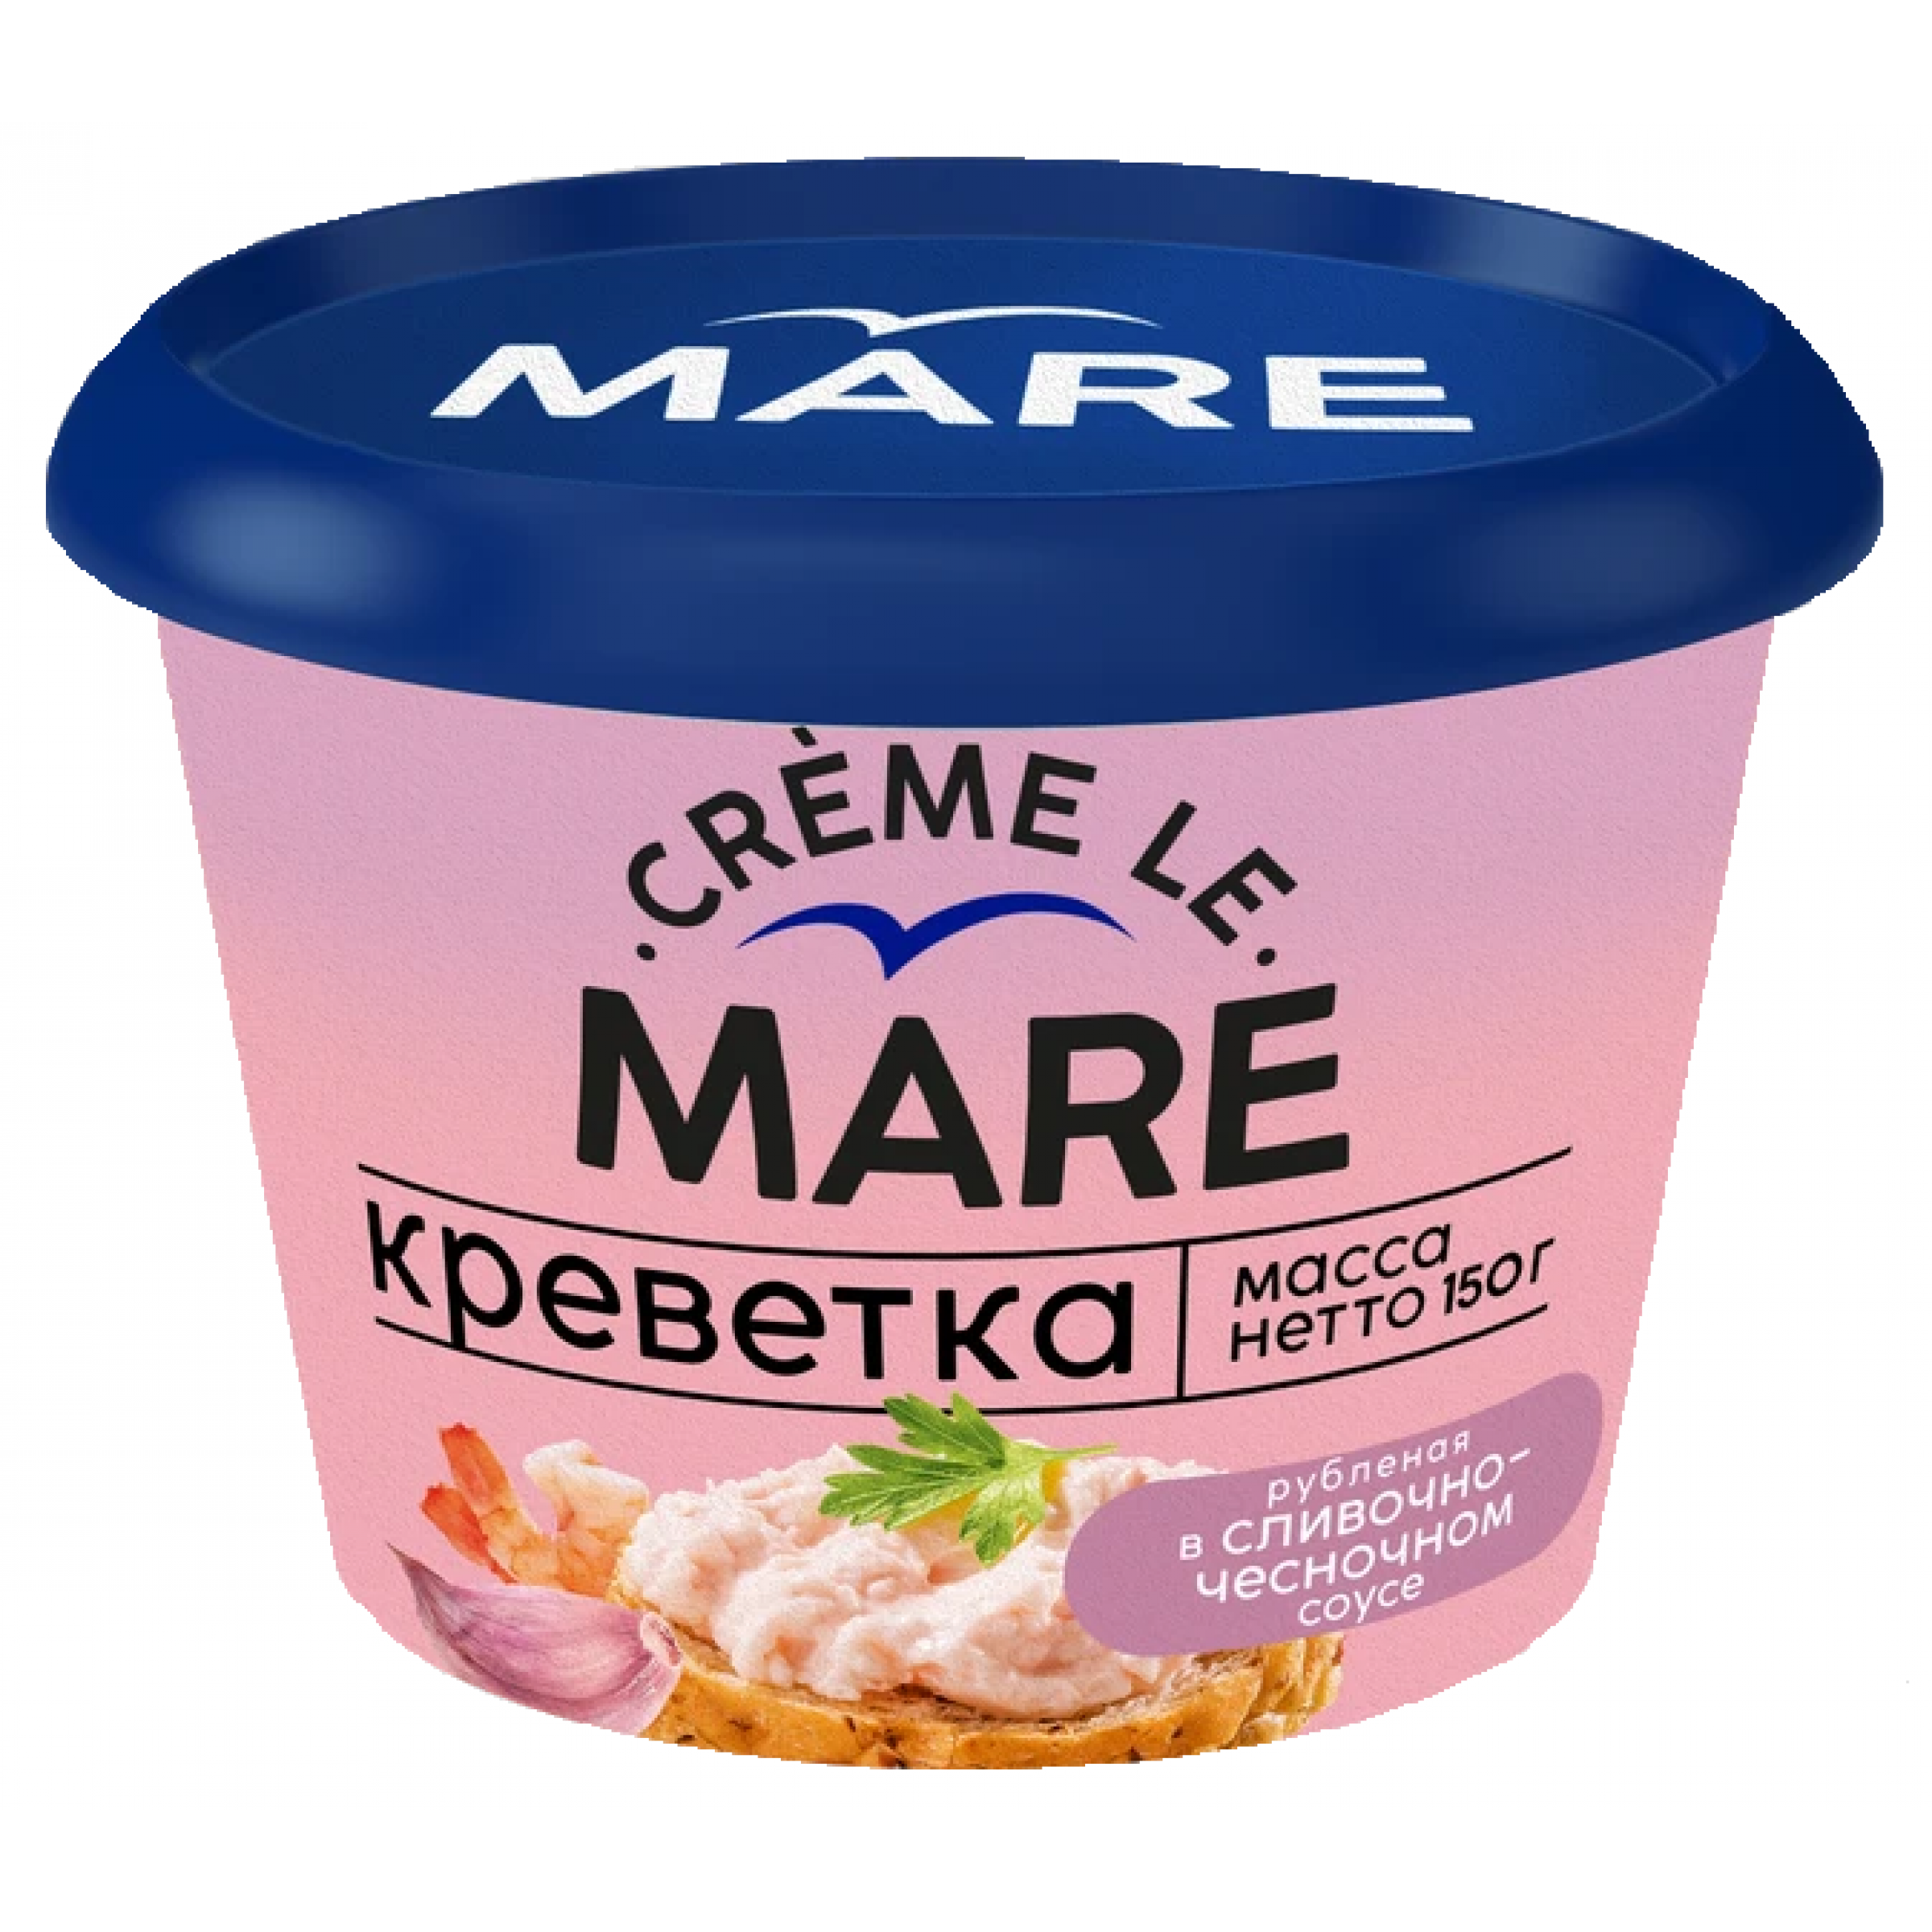 Креветка рубленая в сливочно-чесночном соусе Creme Le Mare, 150г